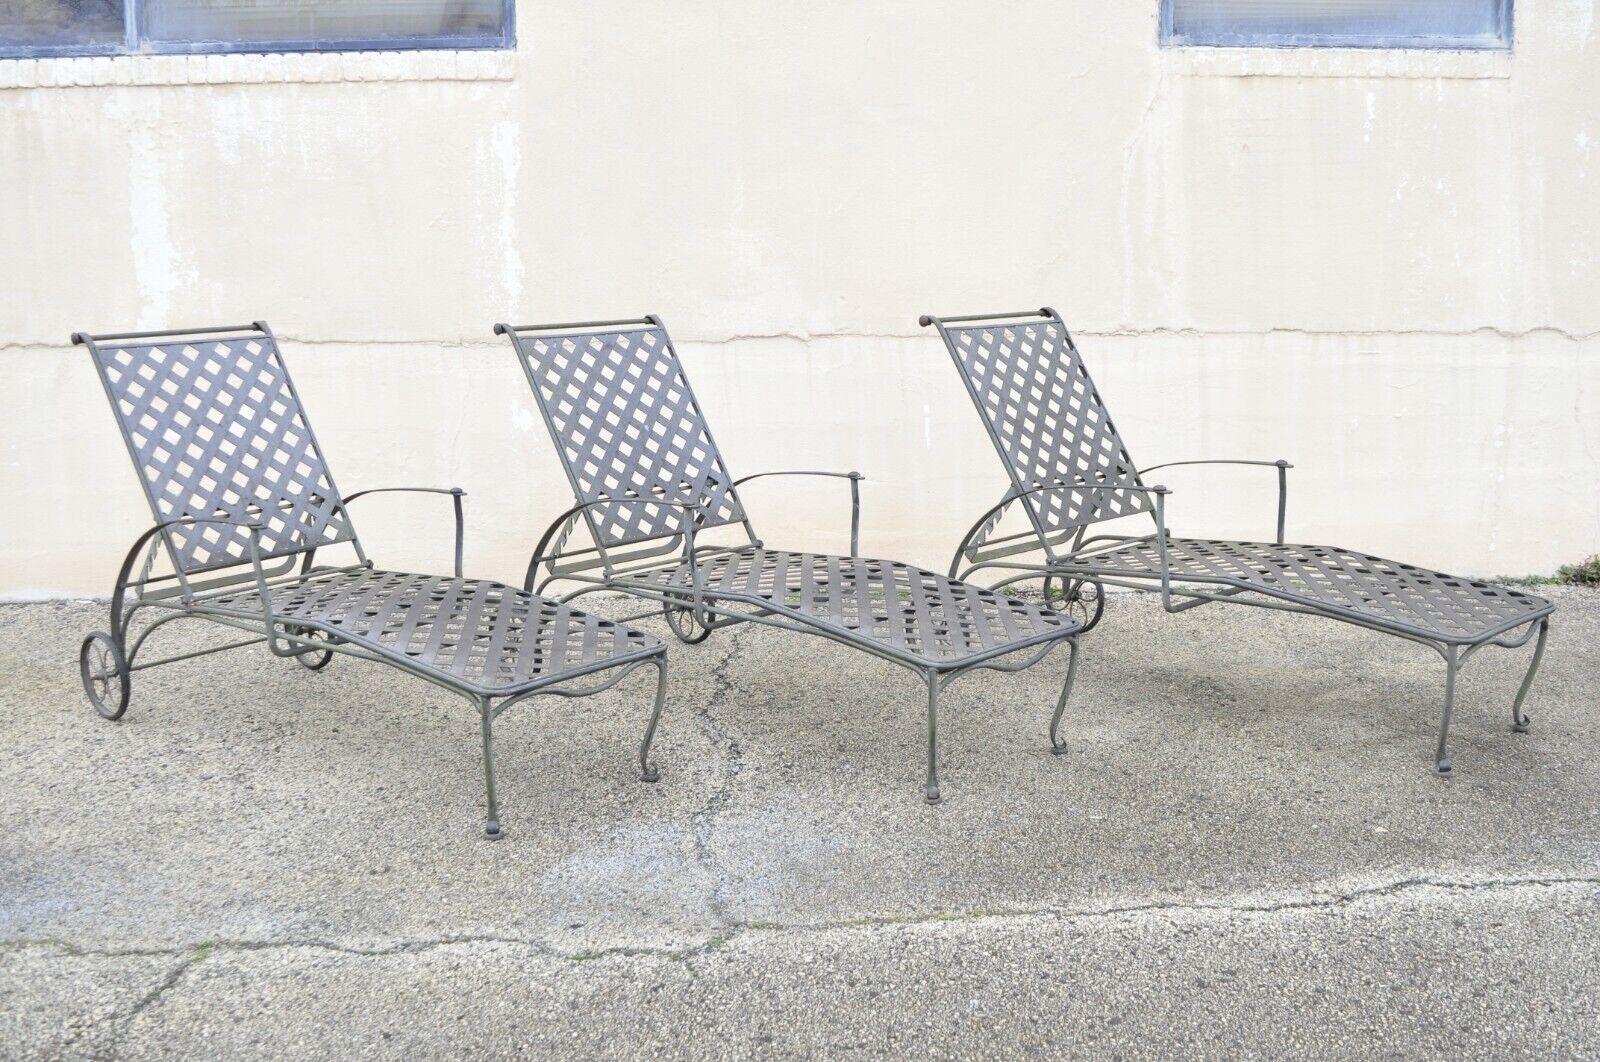 Woodard maddox black wrought iron adjustable pool patio chaise lounge chair. Cet article se caractérise par une structure en fer forgé de qualité, une assise en treillis croisé, un dossier réglable et une forme sculpturale élégante. Vers la fin du